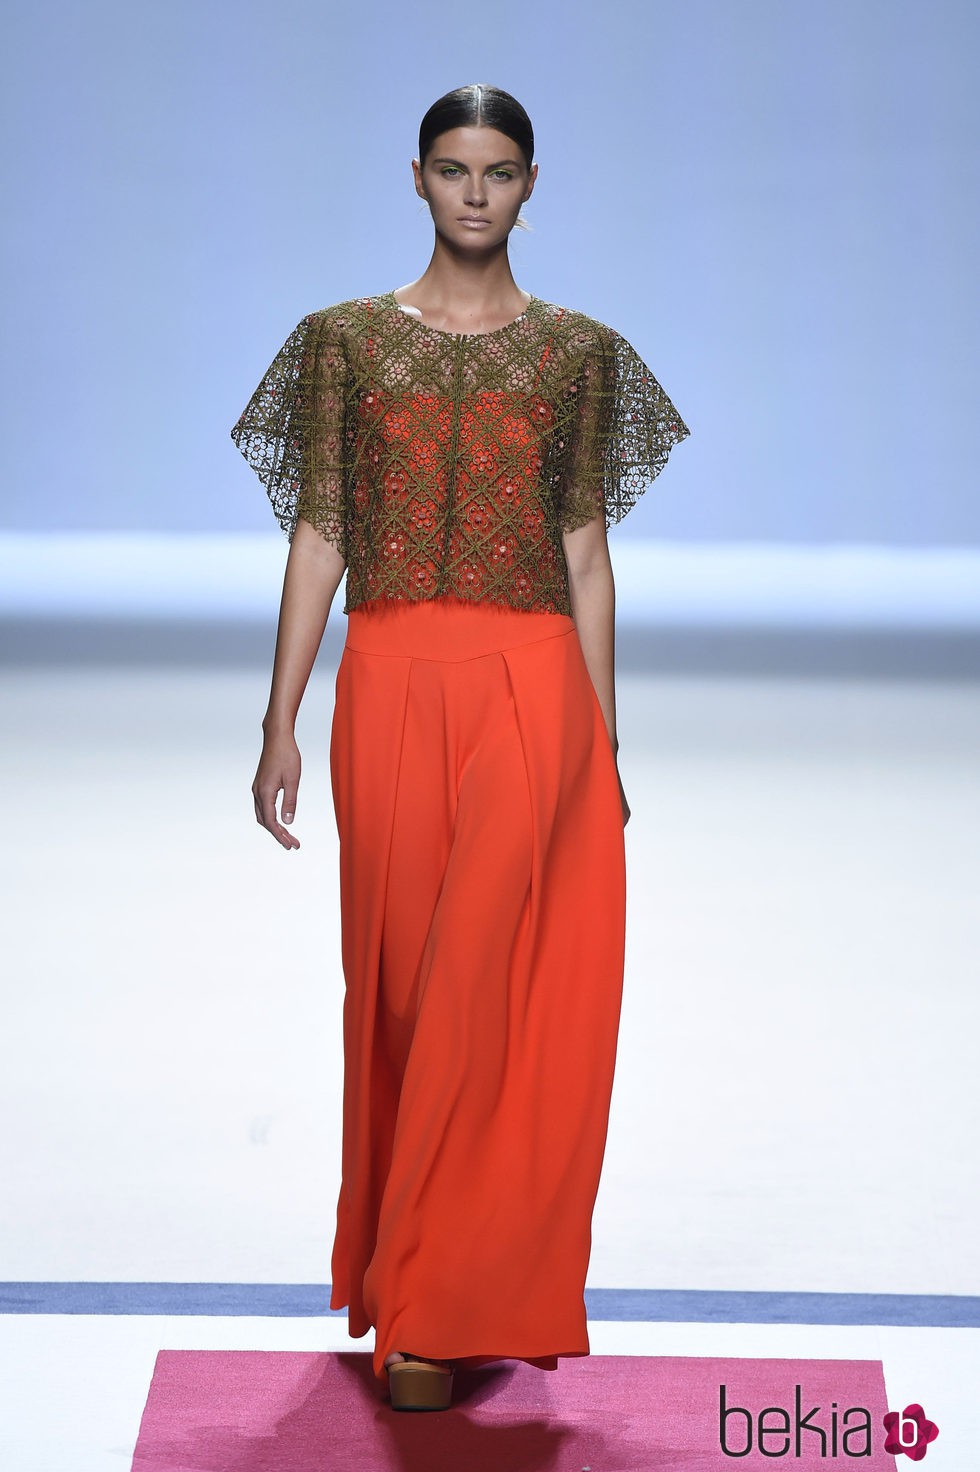 Camiseta marrón sobre vestido naranja de la colección de primavera/verano 2016 de Devota&Lomba en Madrid Fashion Week